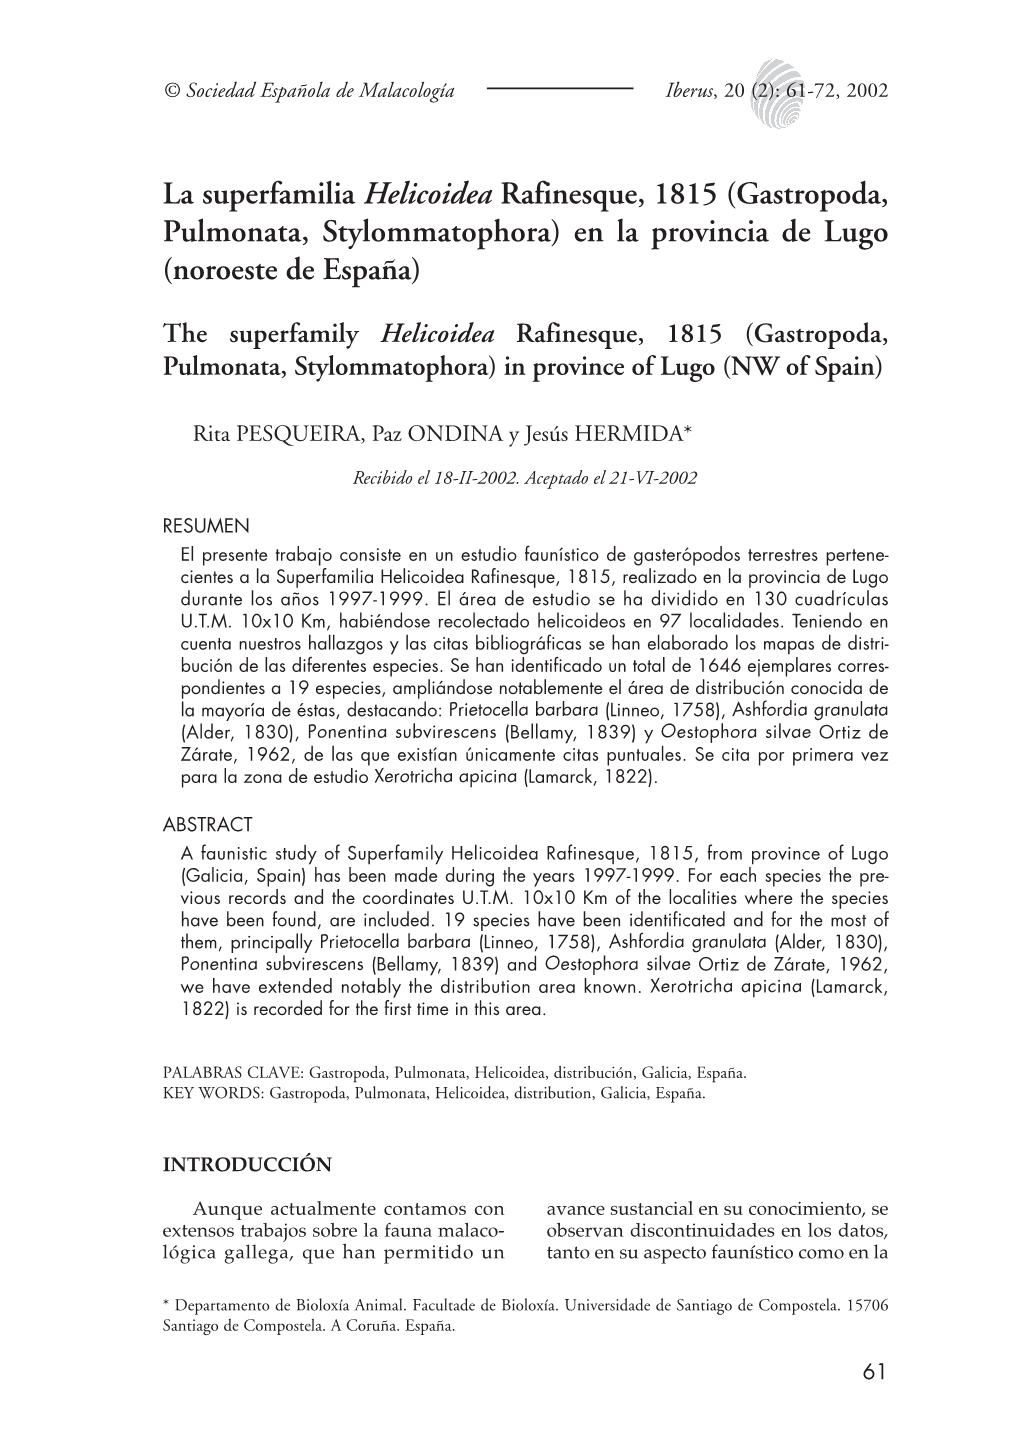 La Superfamilia Helicoidea Rafinesque, 1815 (Gastropoda, Pulmonata, Stylommatophora) En La Provincia De Lugo (Noroeste De España)